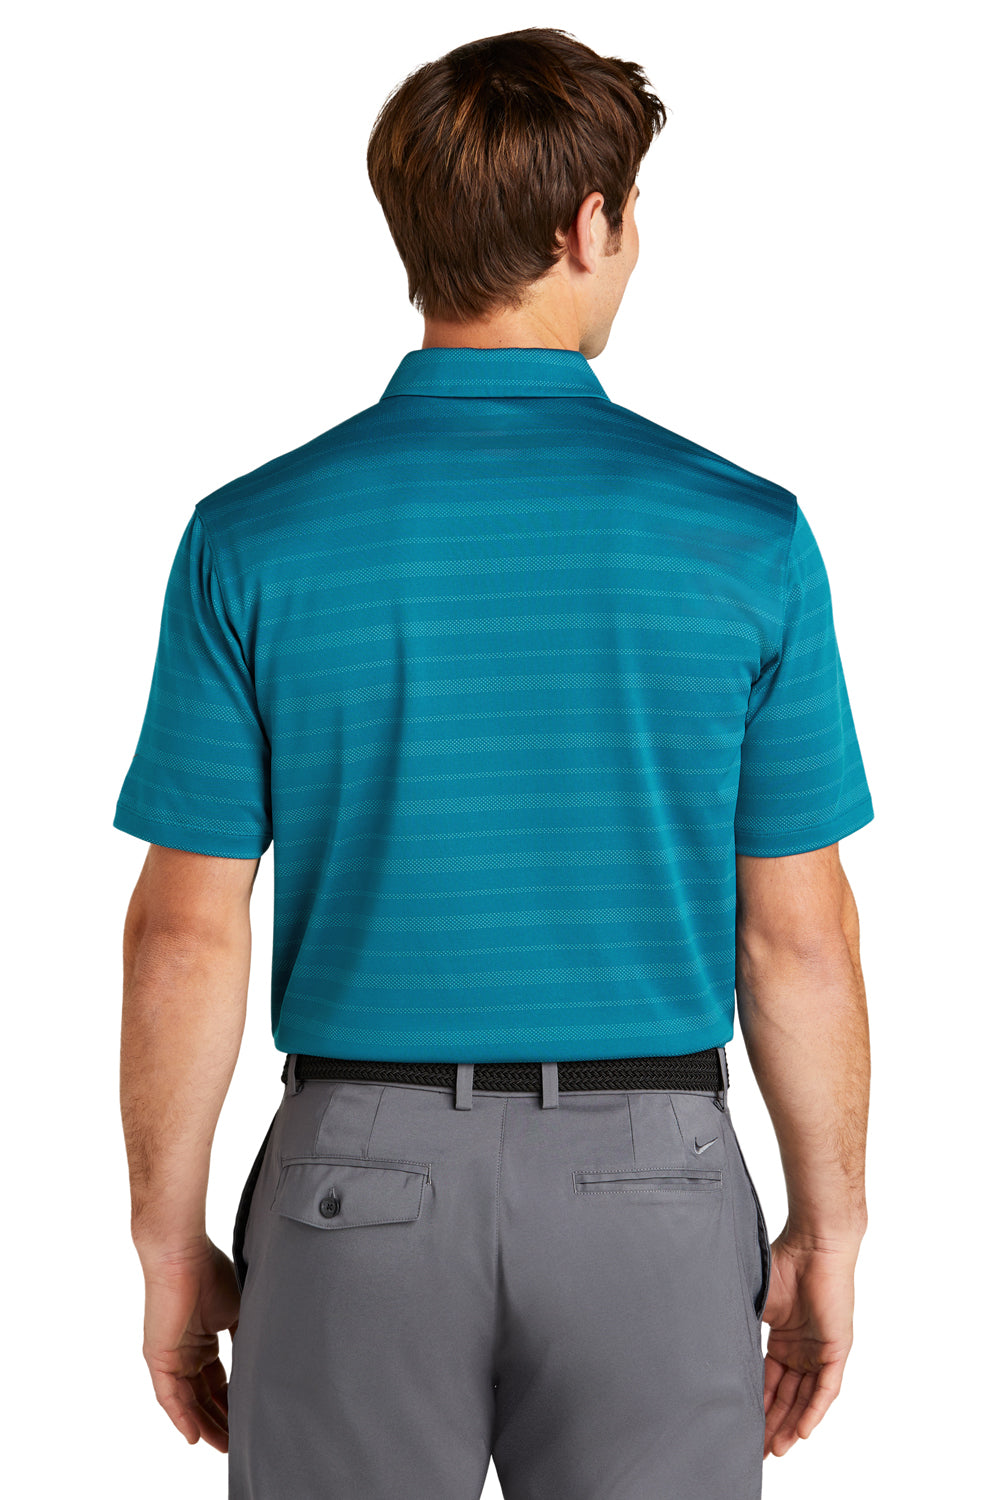 Nike NKDC2115 Mens Vapor Jacquard Dri-Fit Moisture Wicking Short Sleeve Polo Shirt Marina Blue Model Back